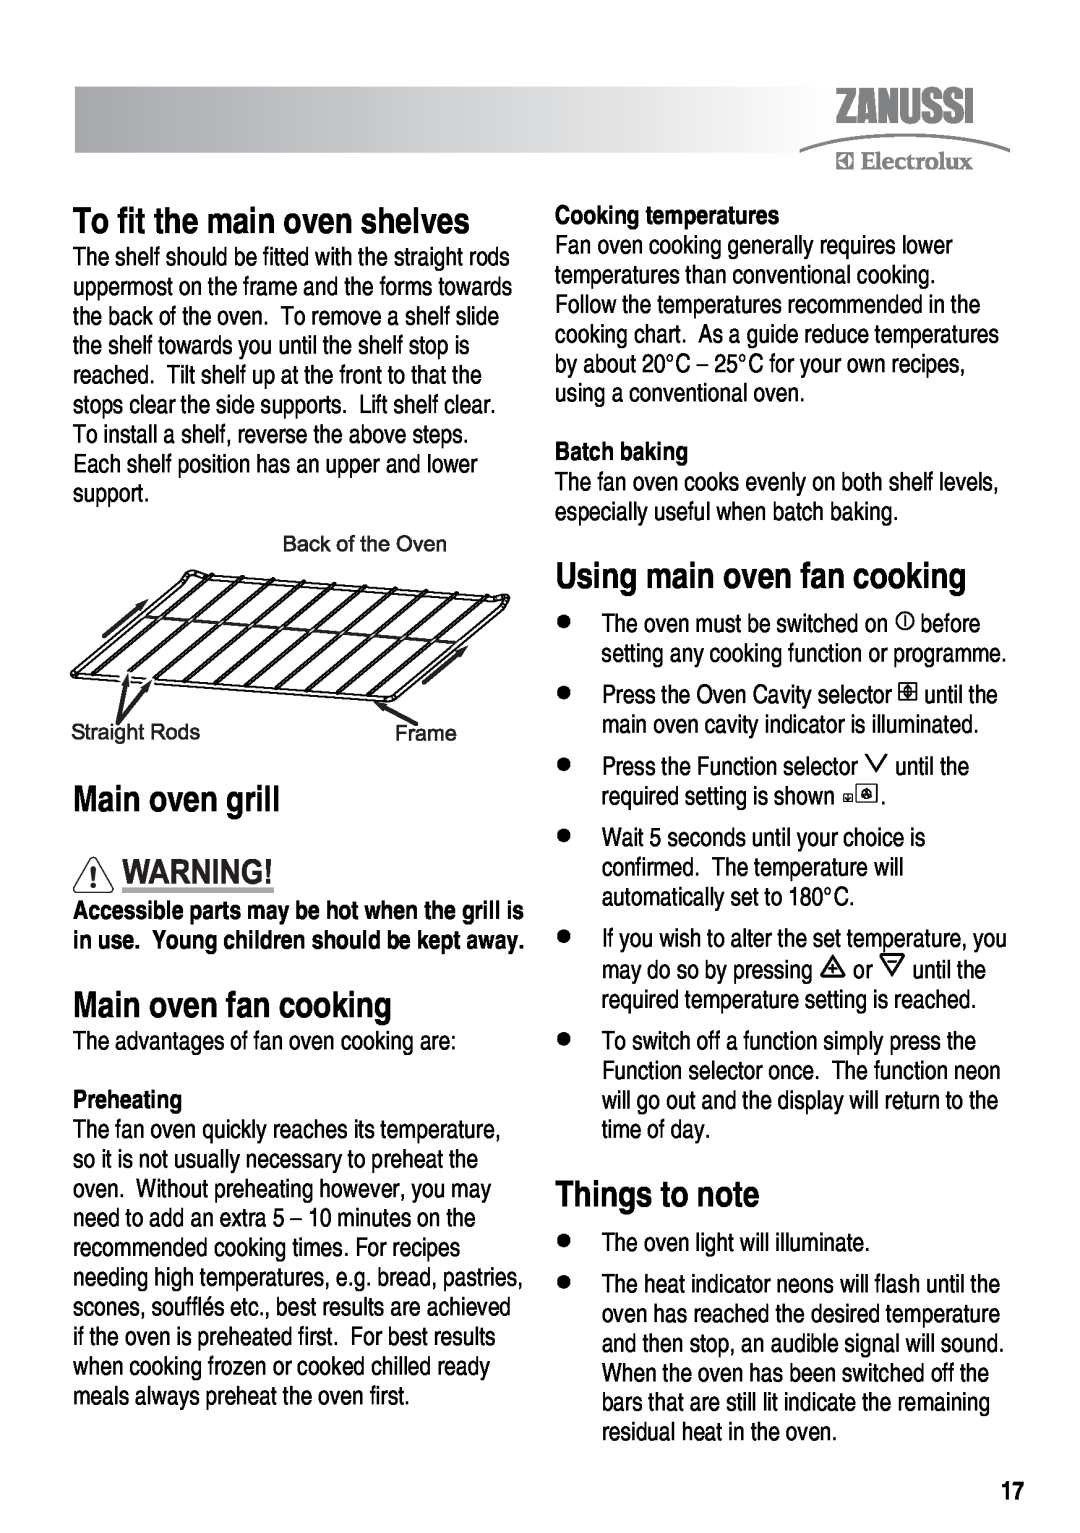 Zanussi ZKT6050 Main oven grill, Main oven fan cooking, Using main oven fan cooking, To fit the main oven shelves 